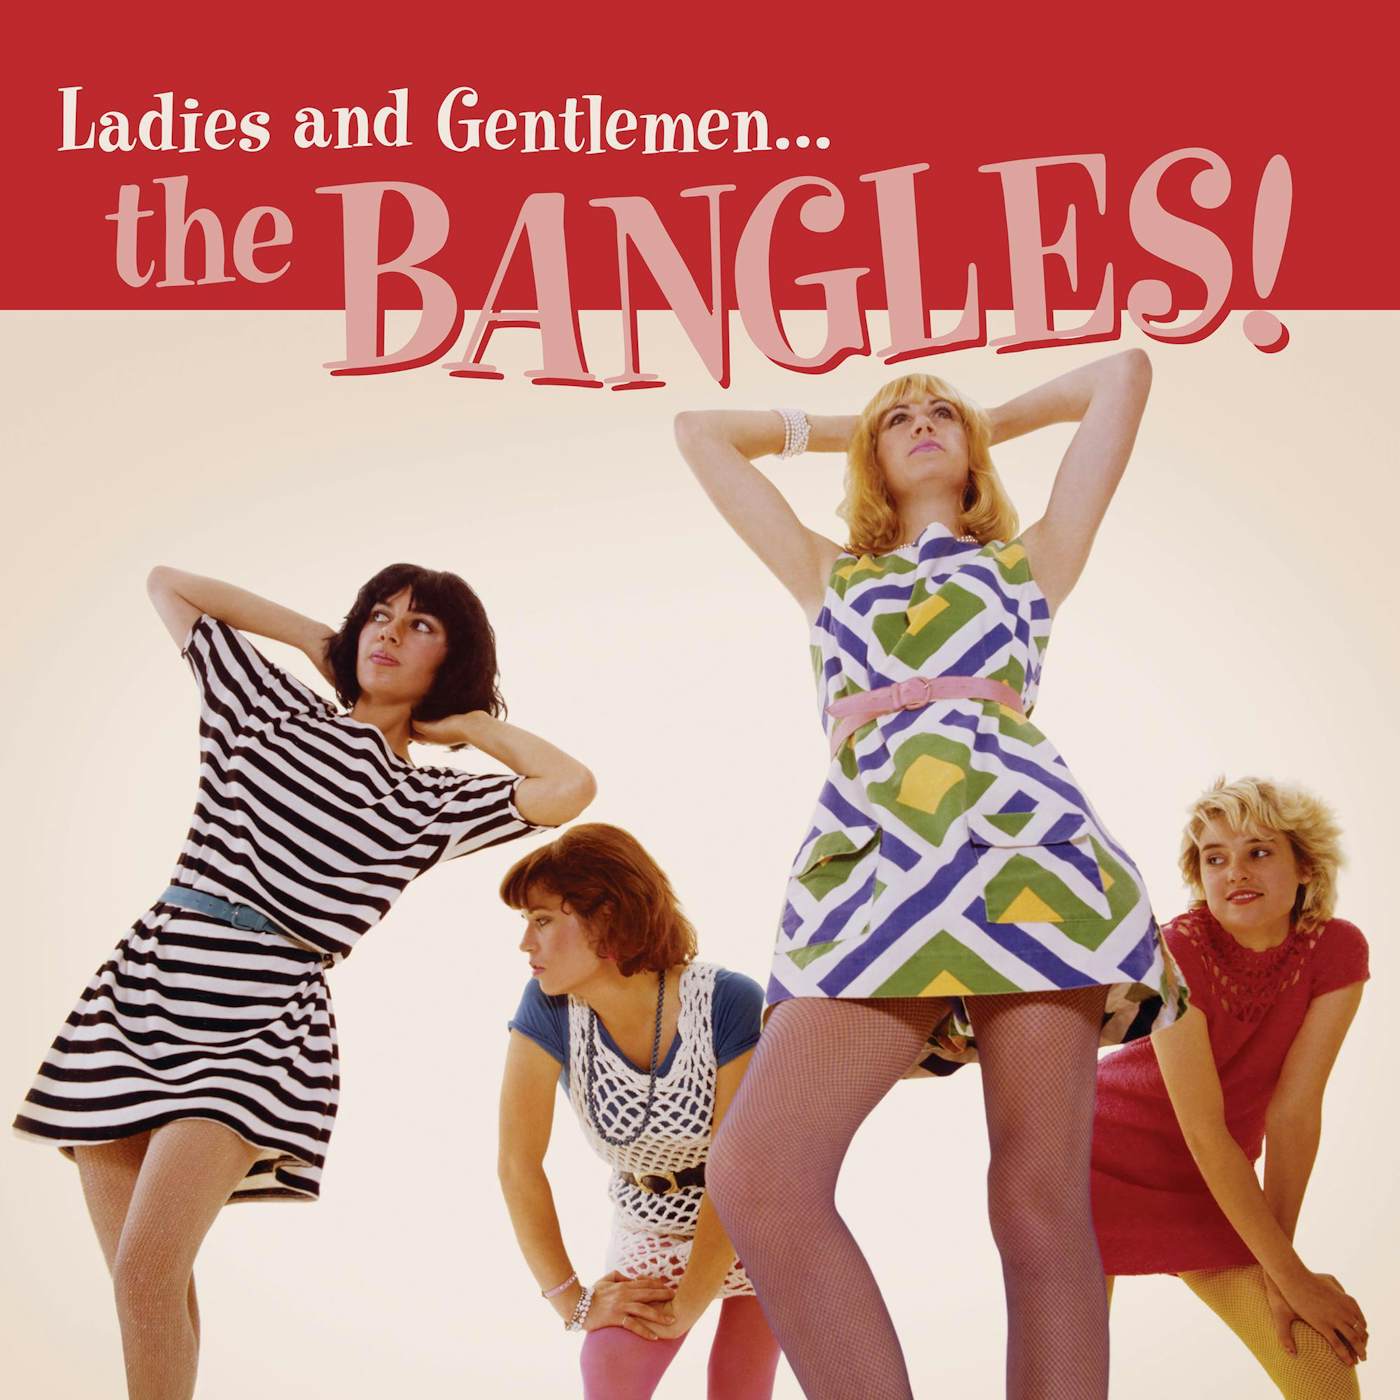 Ladies and Gentlemen: The Bangles! Vinyl Record